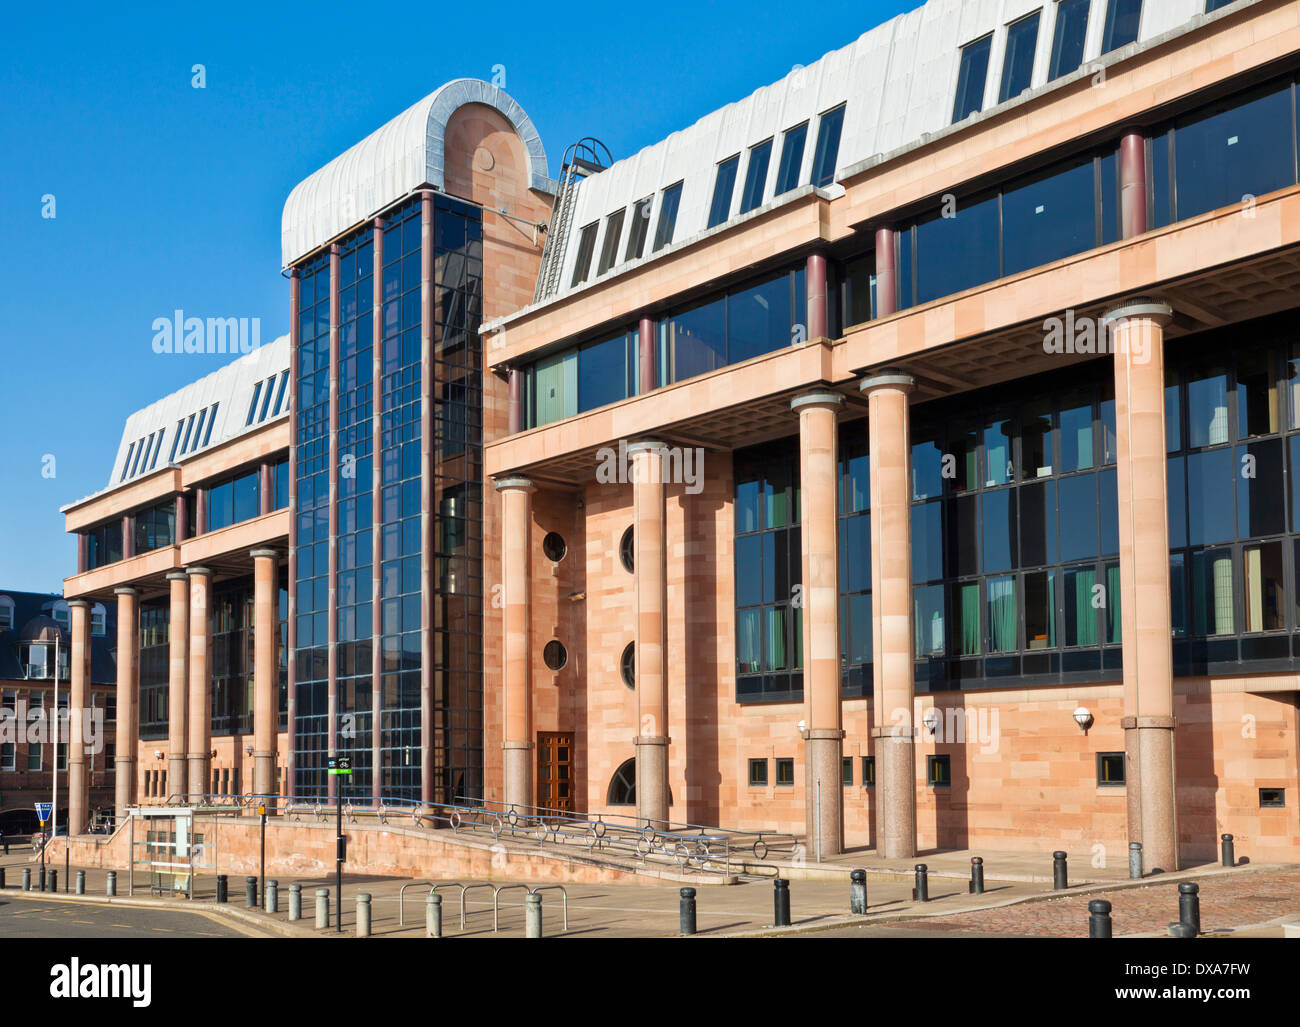 Entrée principale du tribunal de la couronne de Newcastle Newcastle upon Tyne Tyneside, Angleterre du Nord-Est GO UK EU Europe Banque D'Images